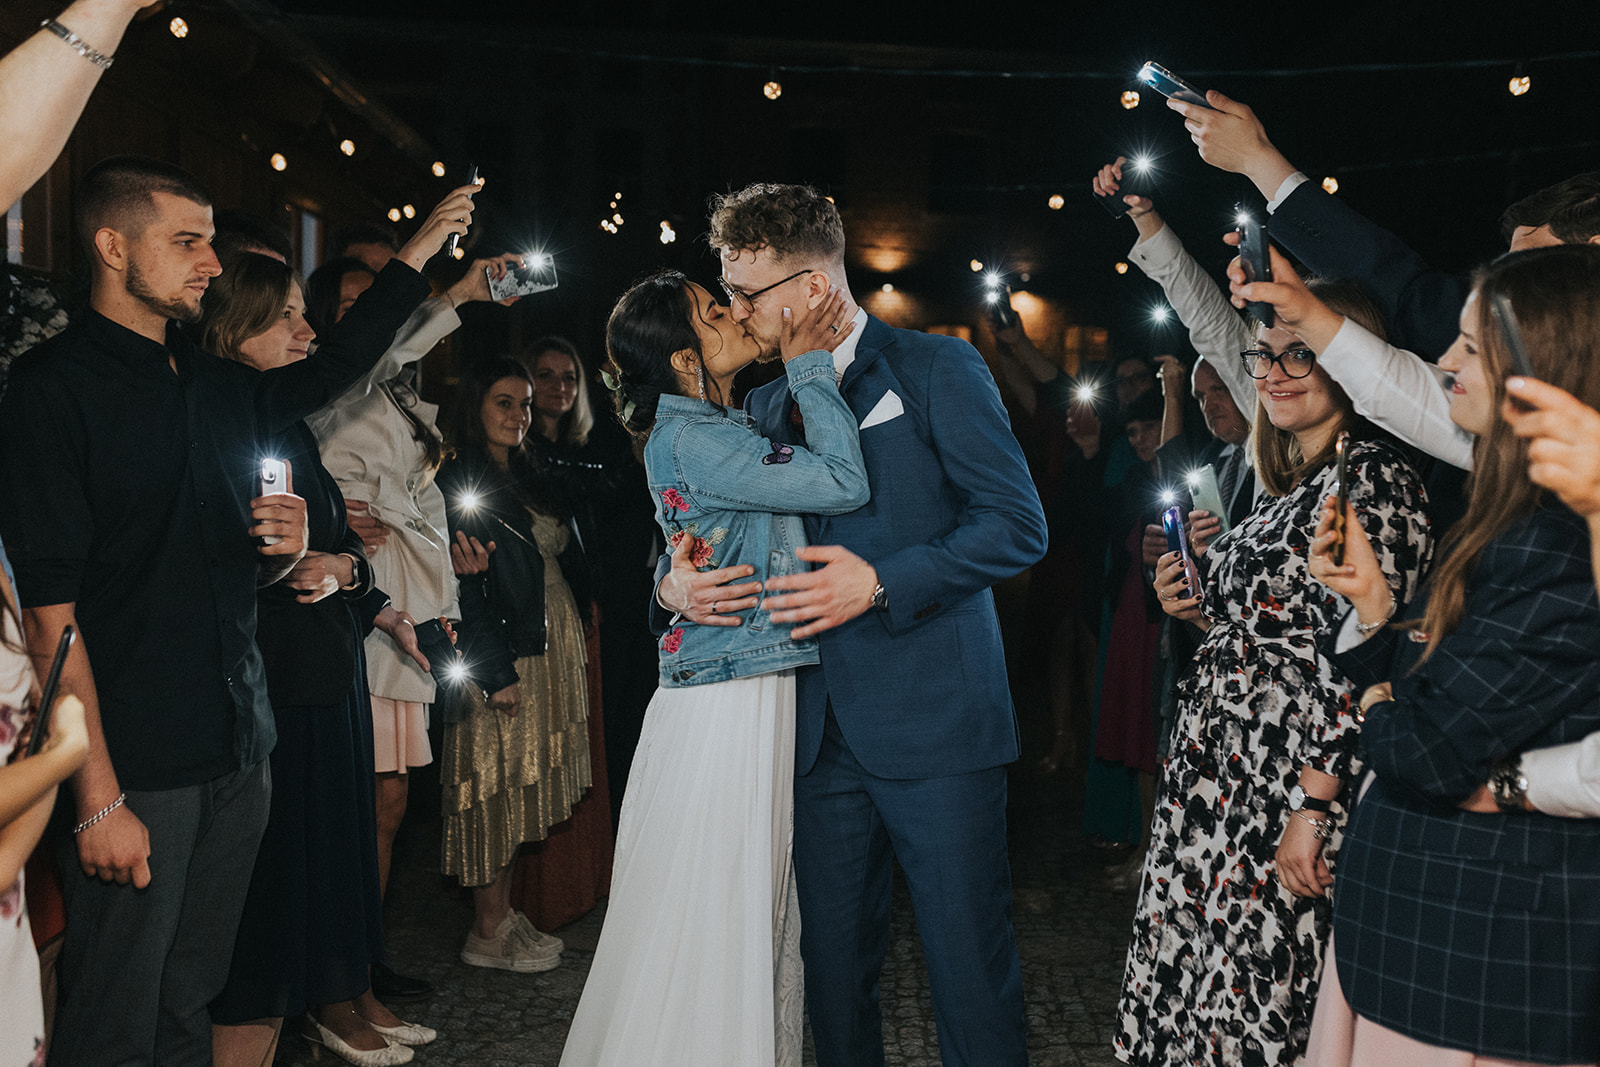 iskierki miłości przy blasku latarek z telefonów gości weselnych